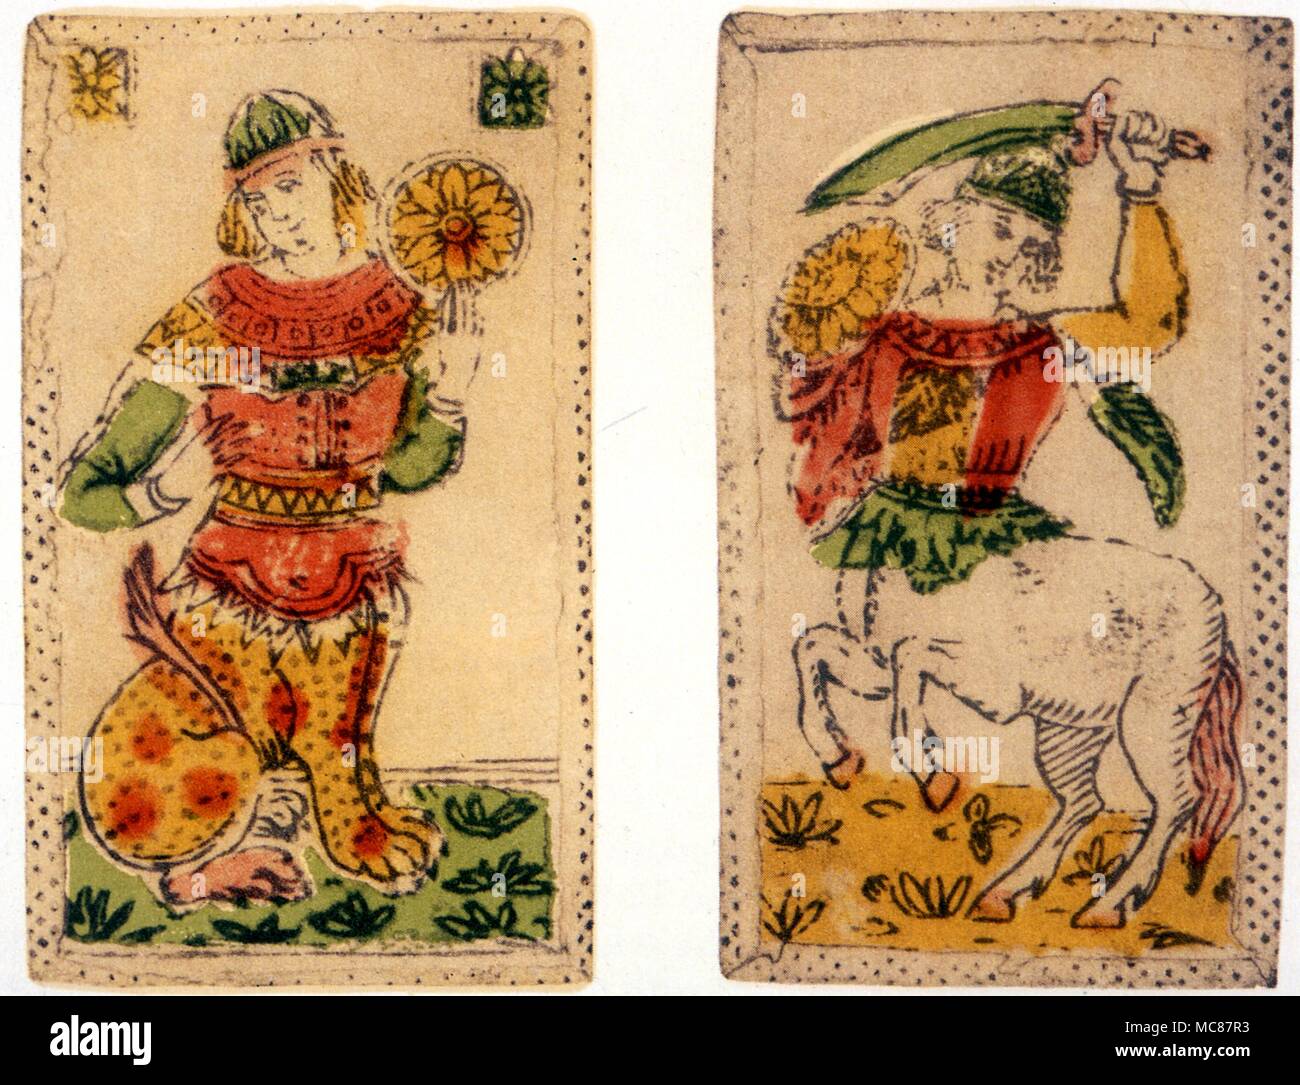 Cartomancie Cartes à jouer cartes Minchiate une paire de cartes cavalier d'épées et de valet de pièces d'un ensemble de 1650 Minchiate florentin Banque D'Images